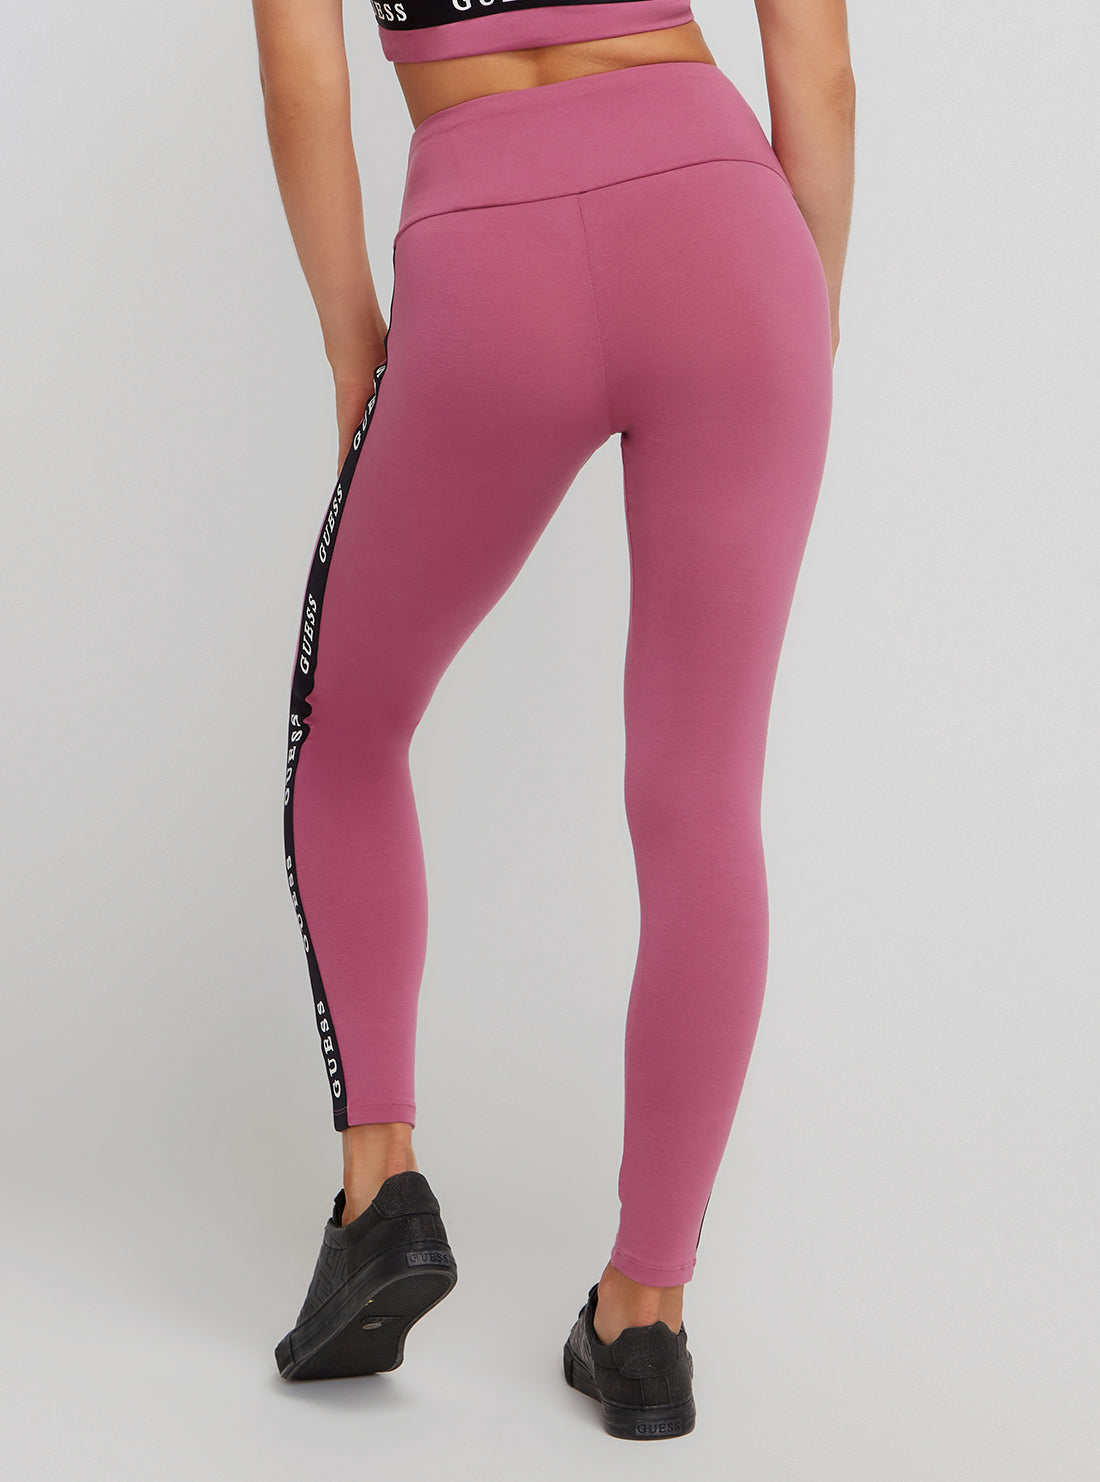 GUESS Activewear Logo Tape Microfiber Leggings | Pink